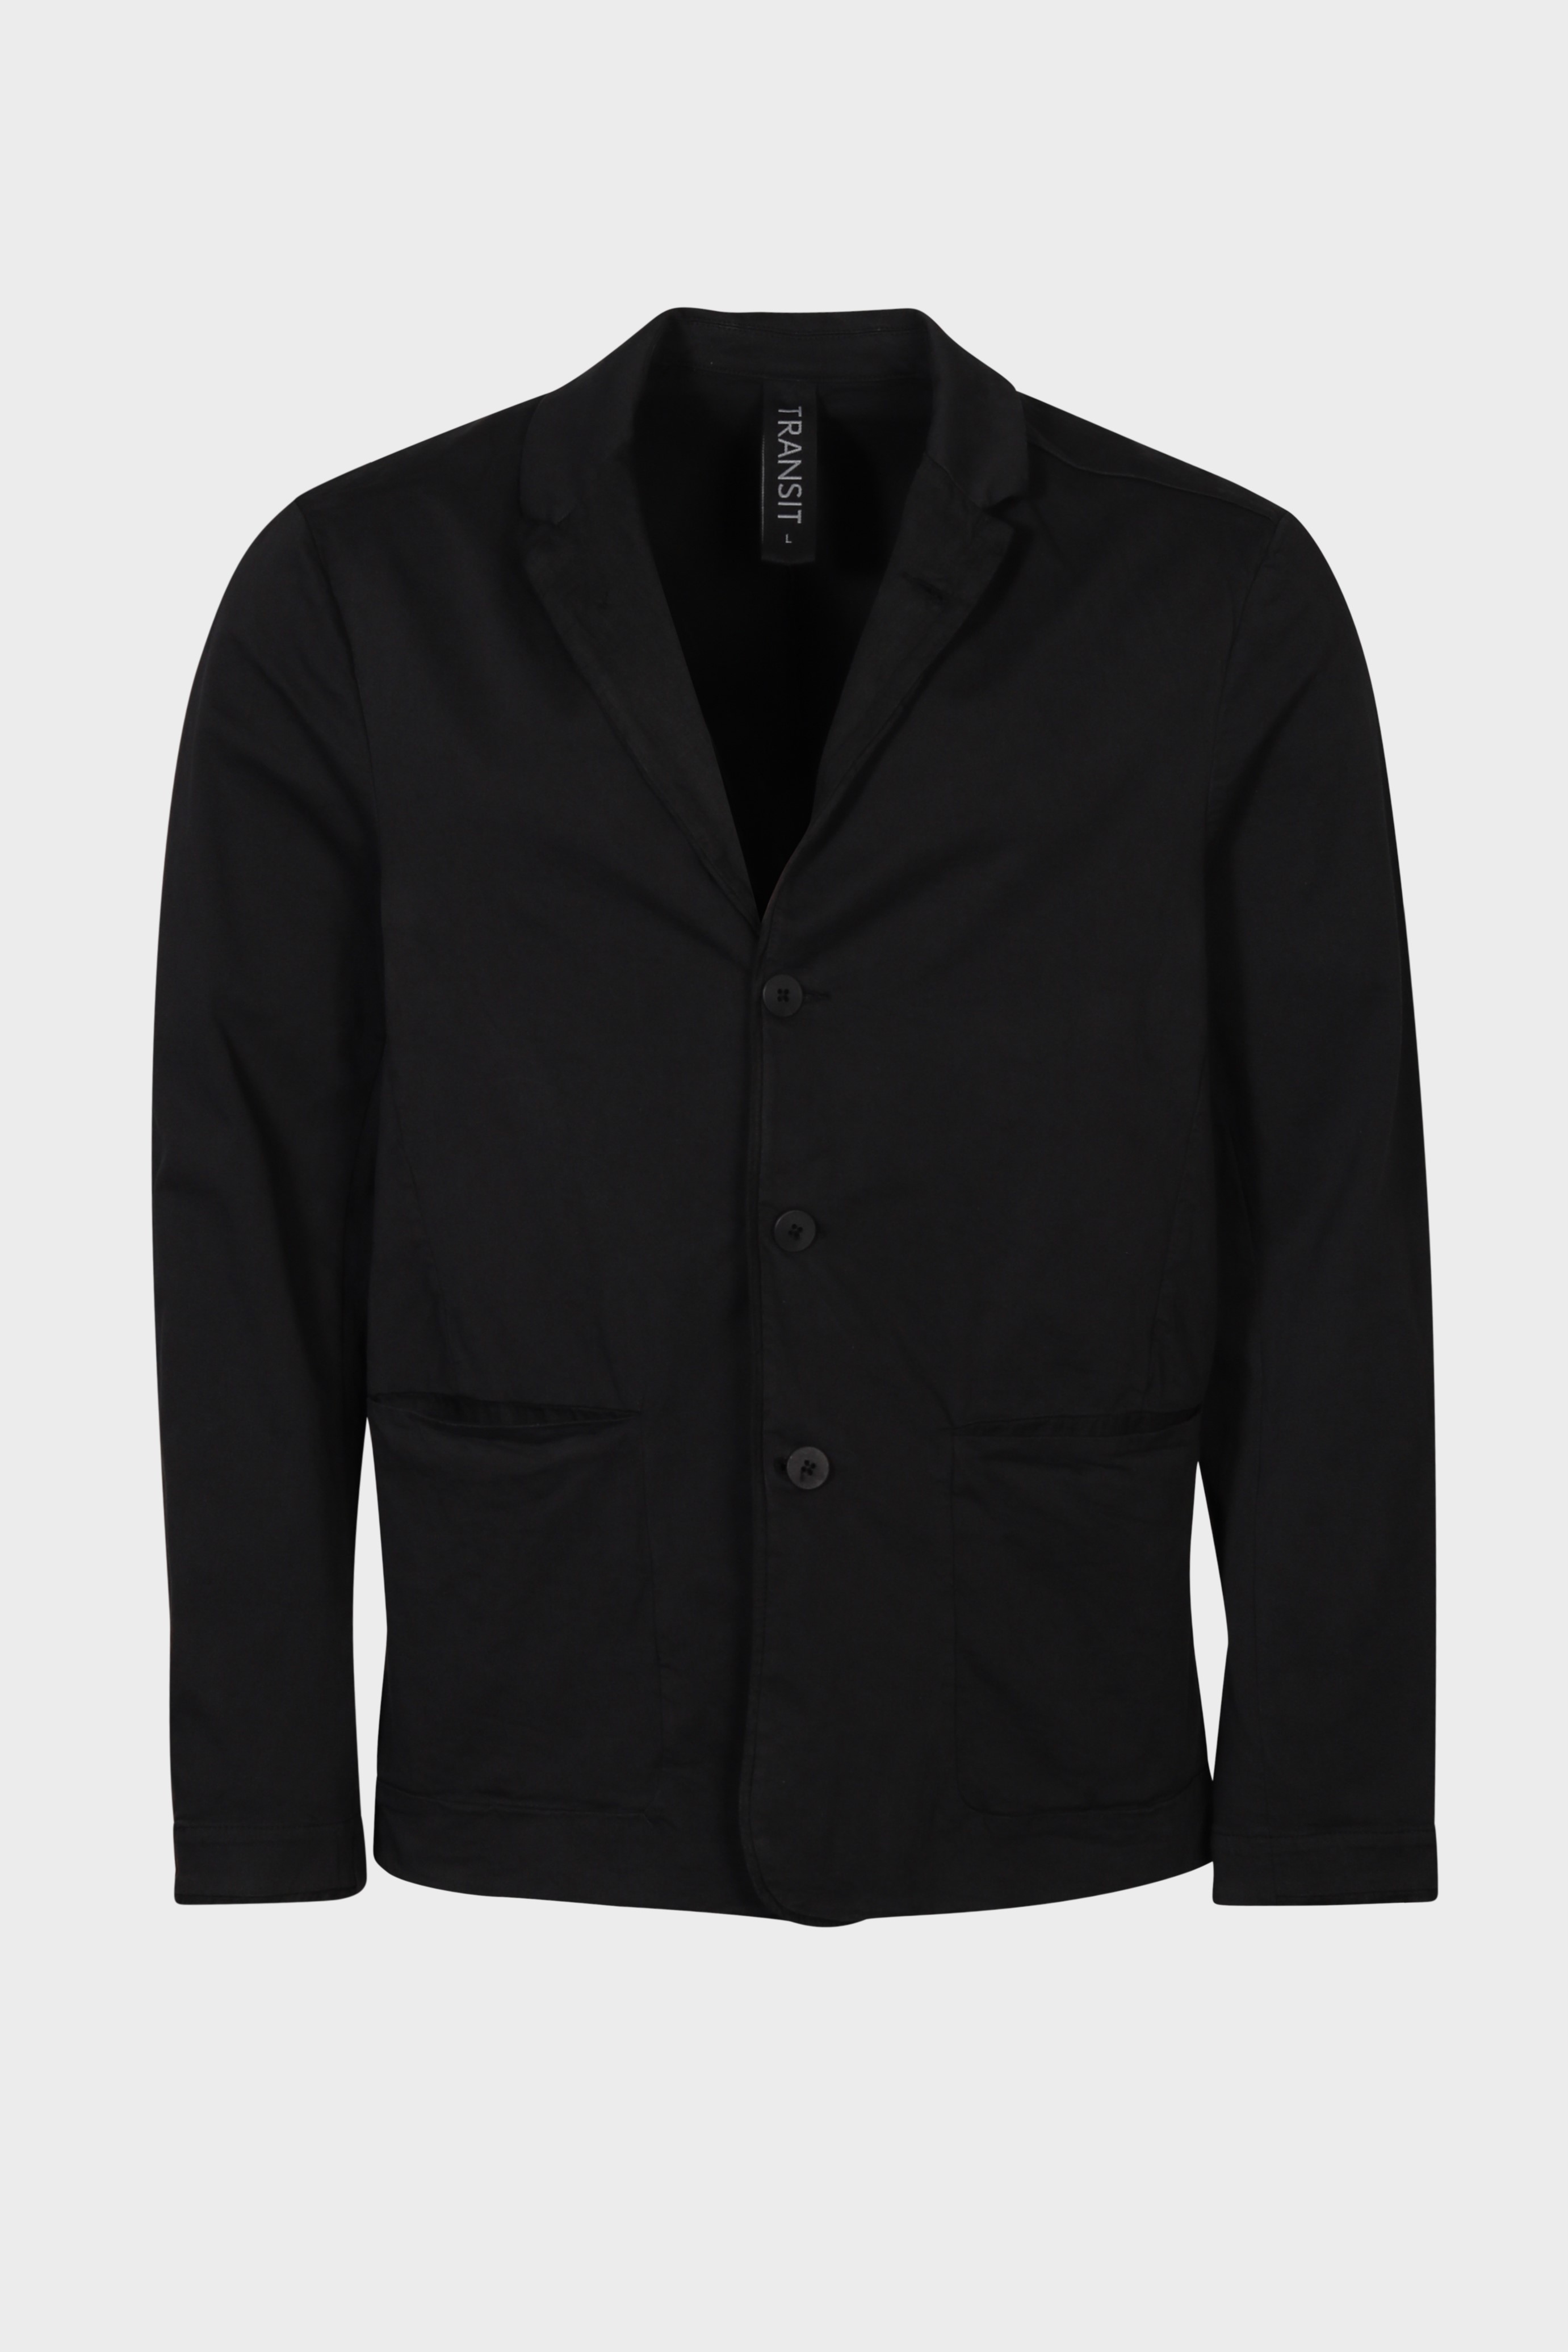 TRANSIT UOMO Cotton/Linen Jacket in Black